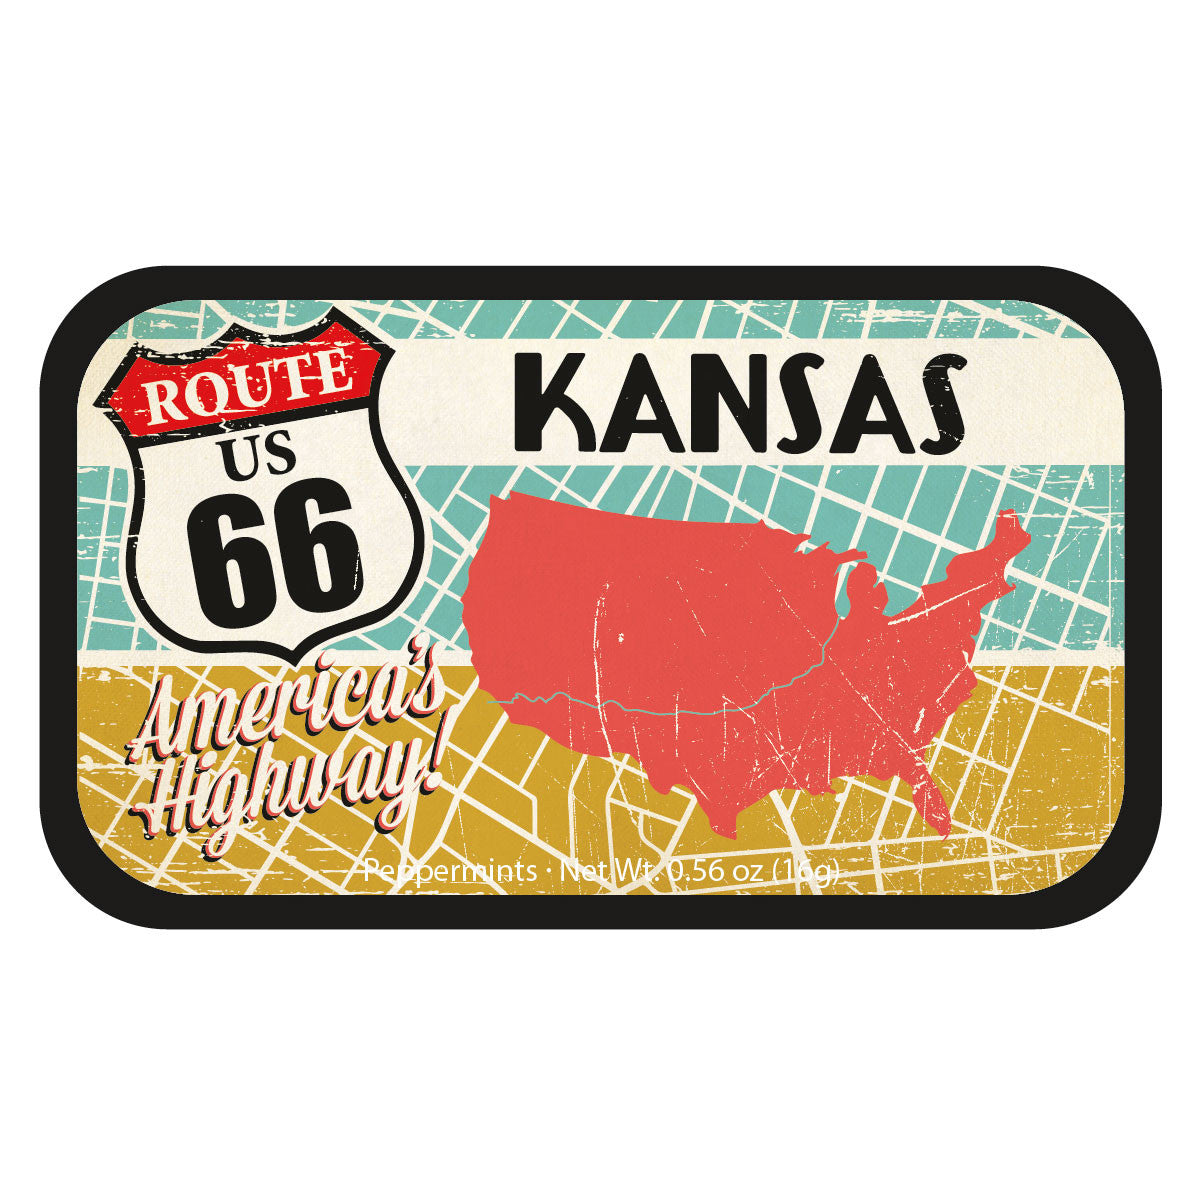 Route 66 Map Kansas - 1290S